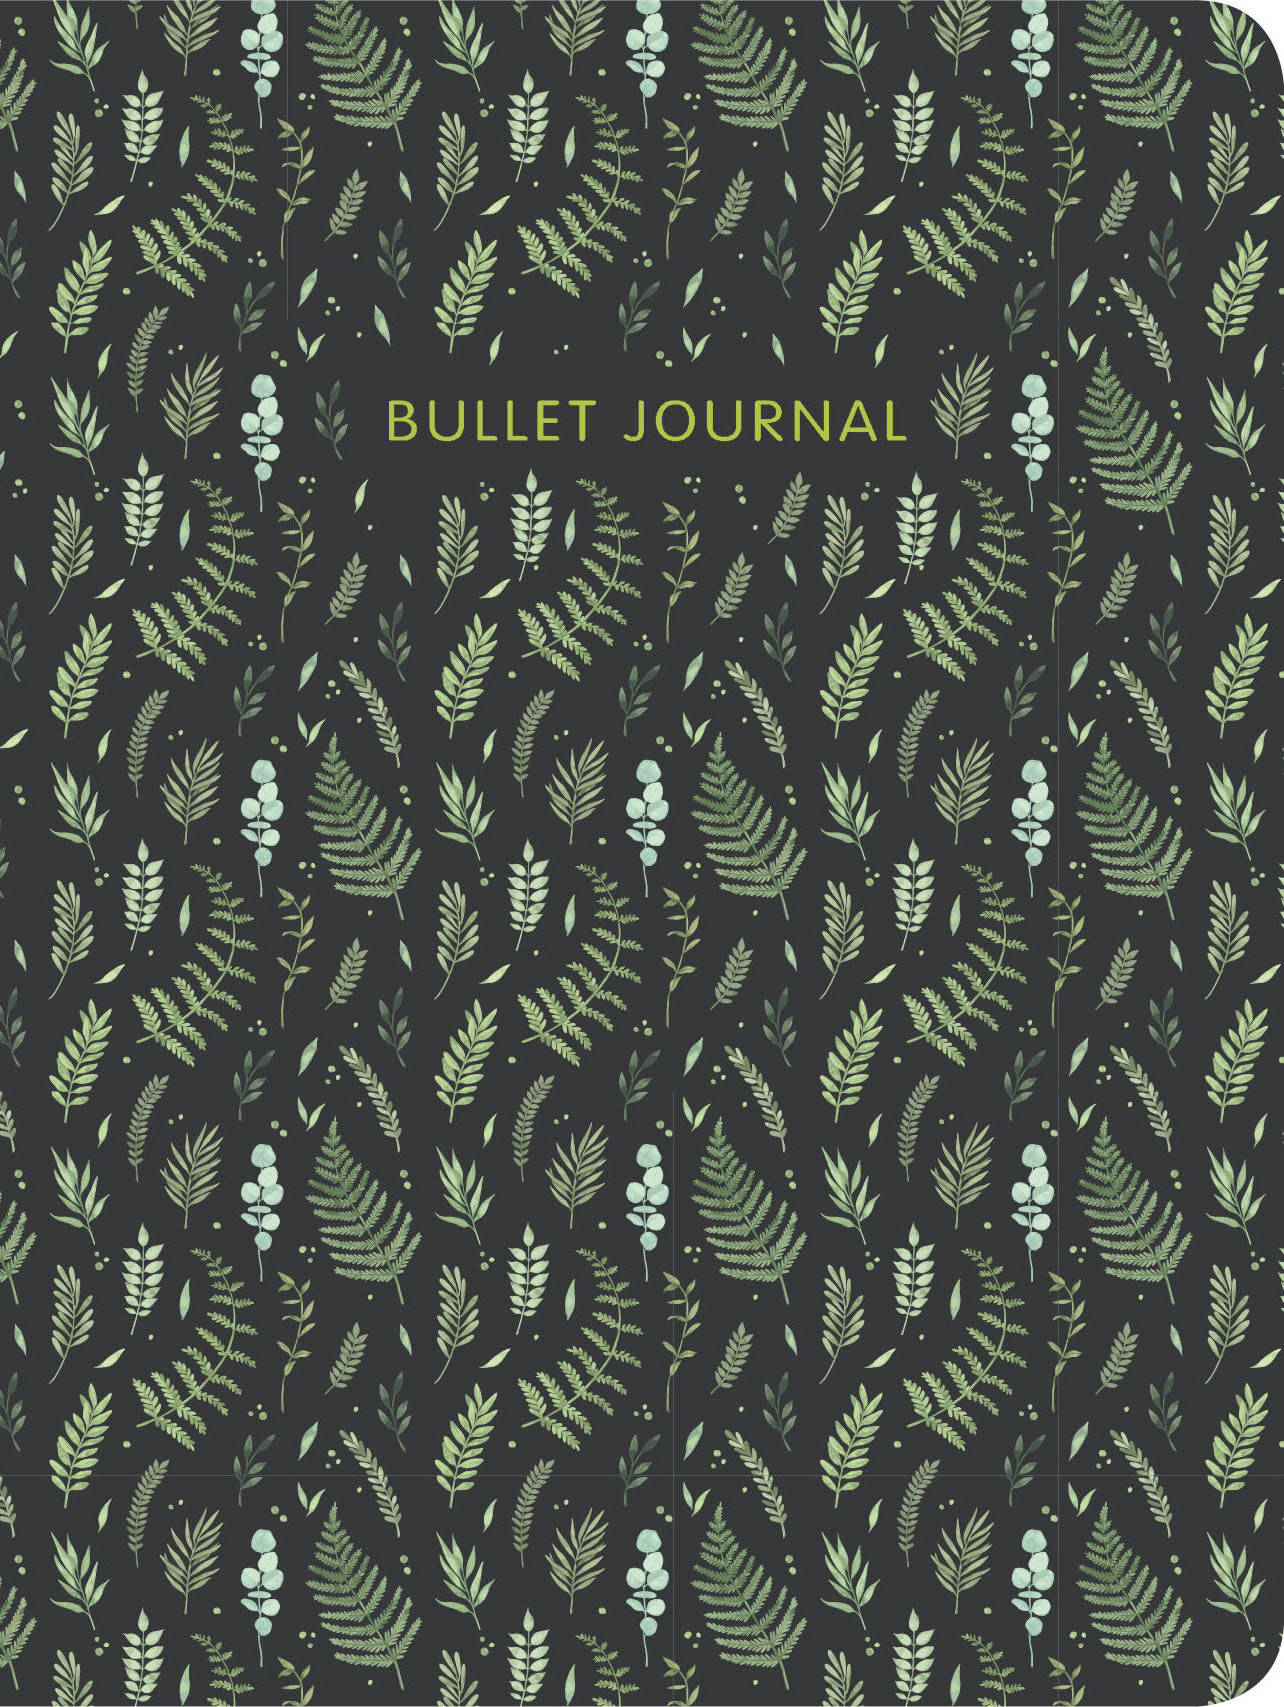   : Bullet Journal () 